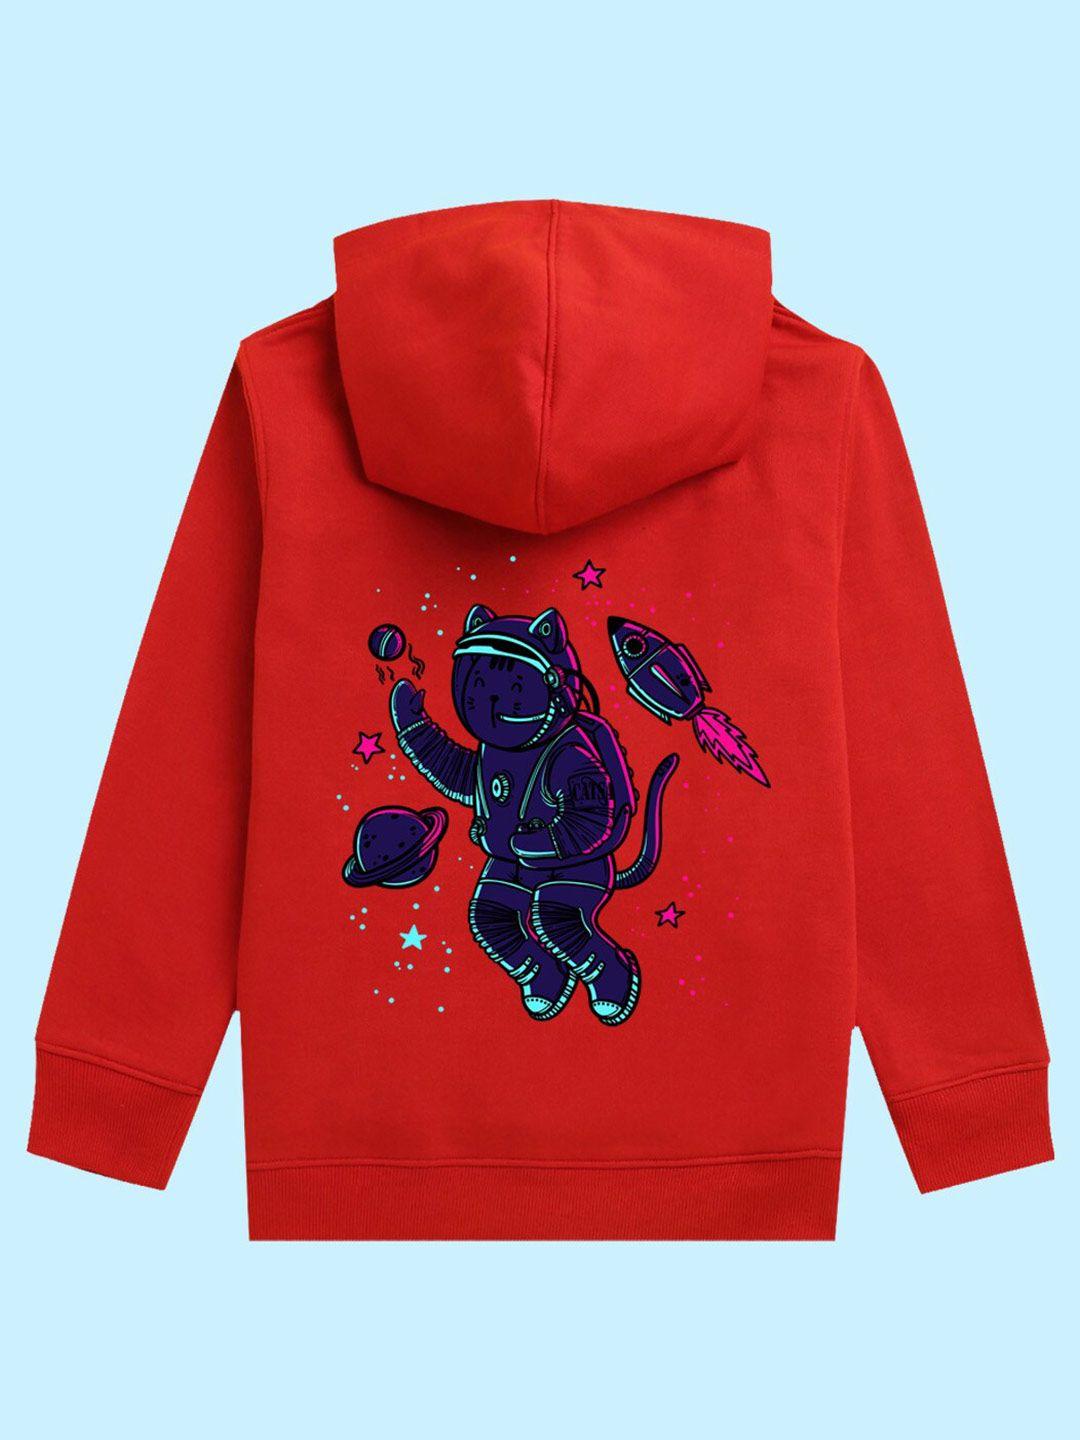 nusyl kids graphic printed hooded pullover sweatshirt